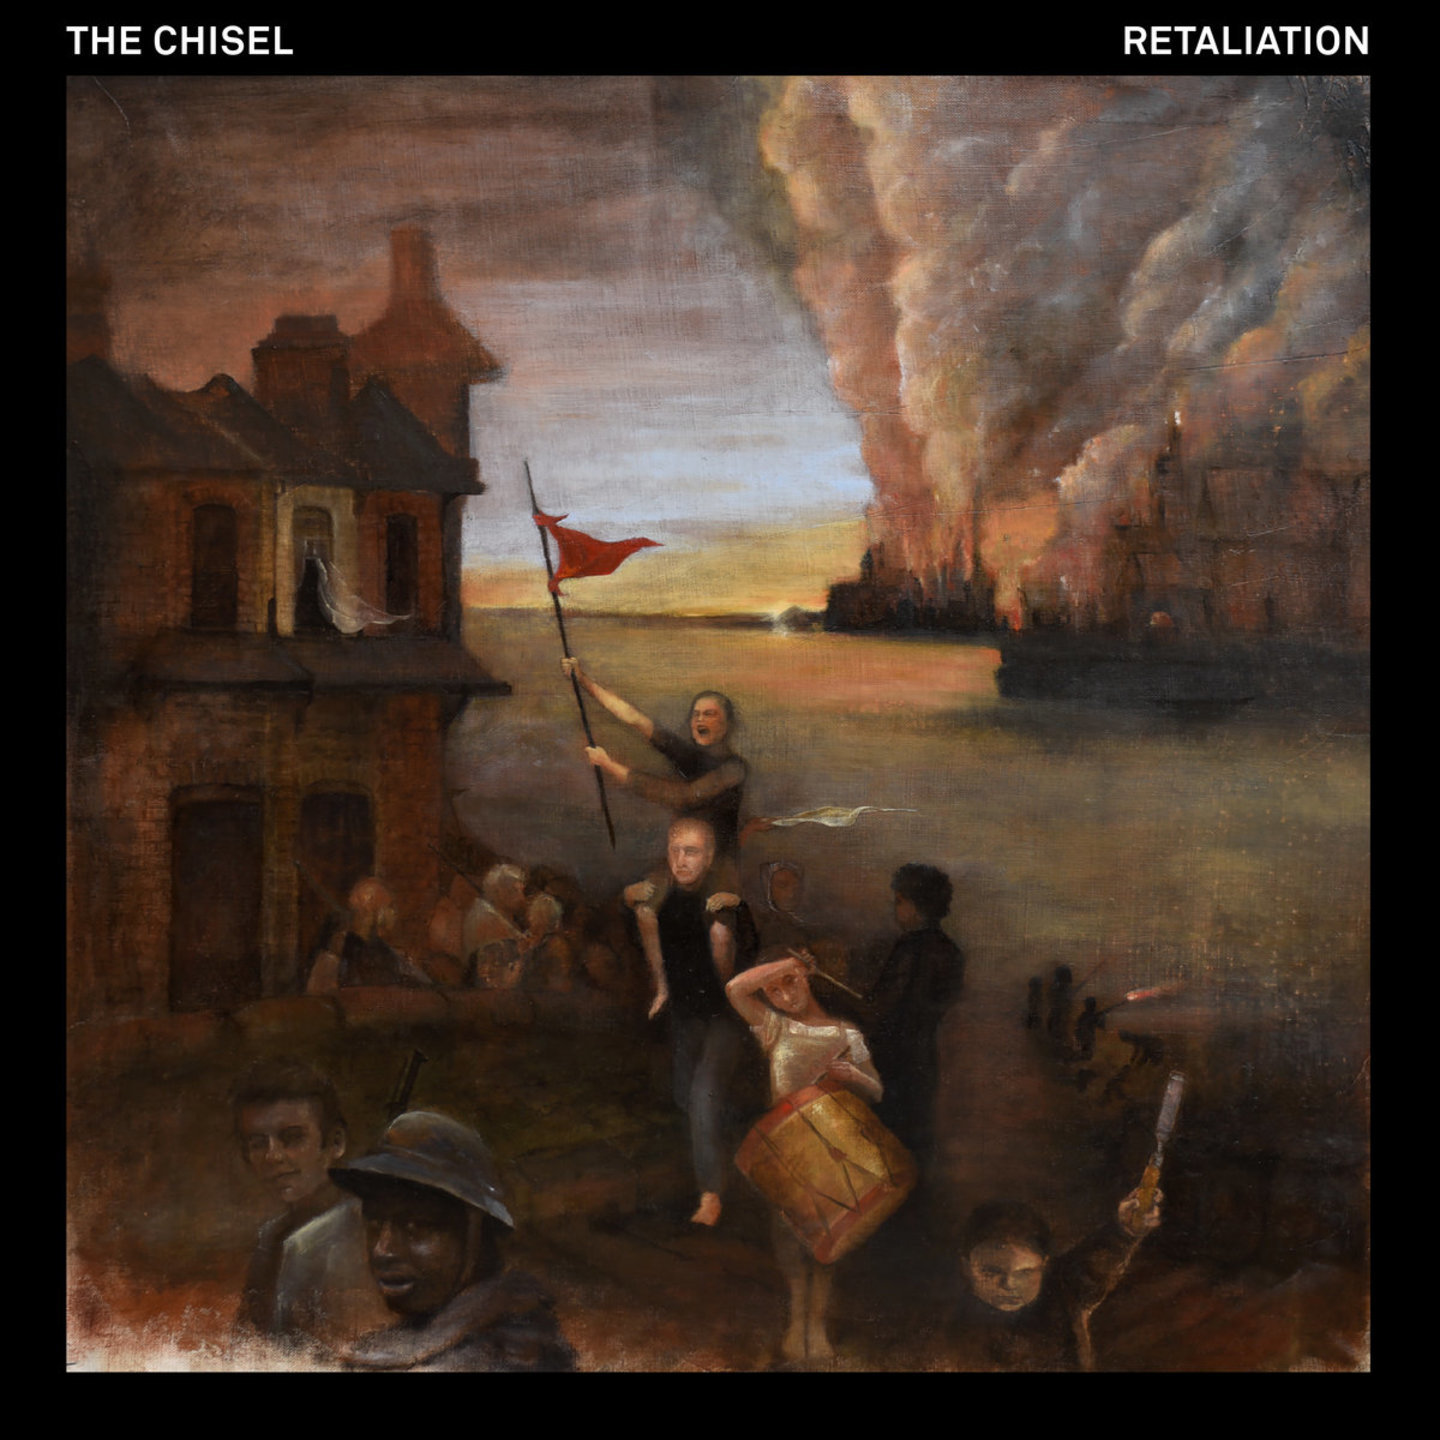 CHISEL, THE - Retaliation LP